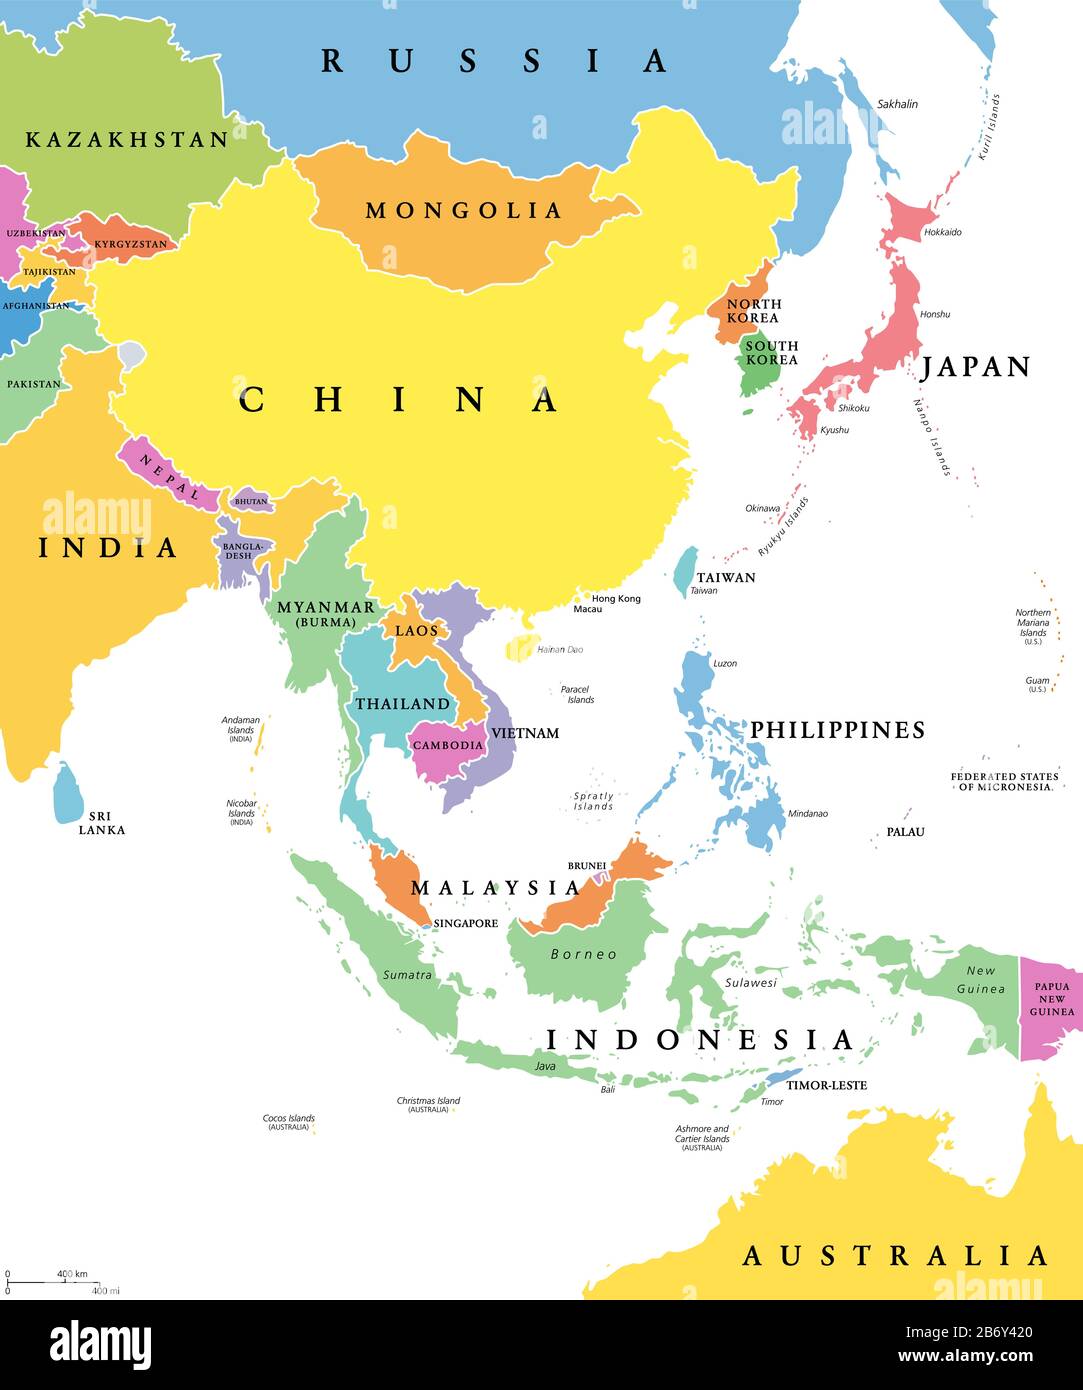 Asia orientale, Stati singoli, mappa politica. Tutti i paesi in colori diversi, con confini nazionali, etichettati con nomi di paesi inglesi. Foto Stock